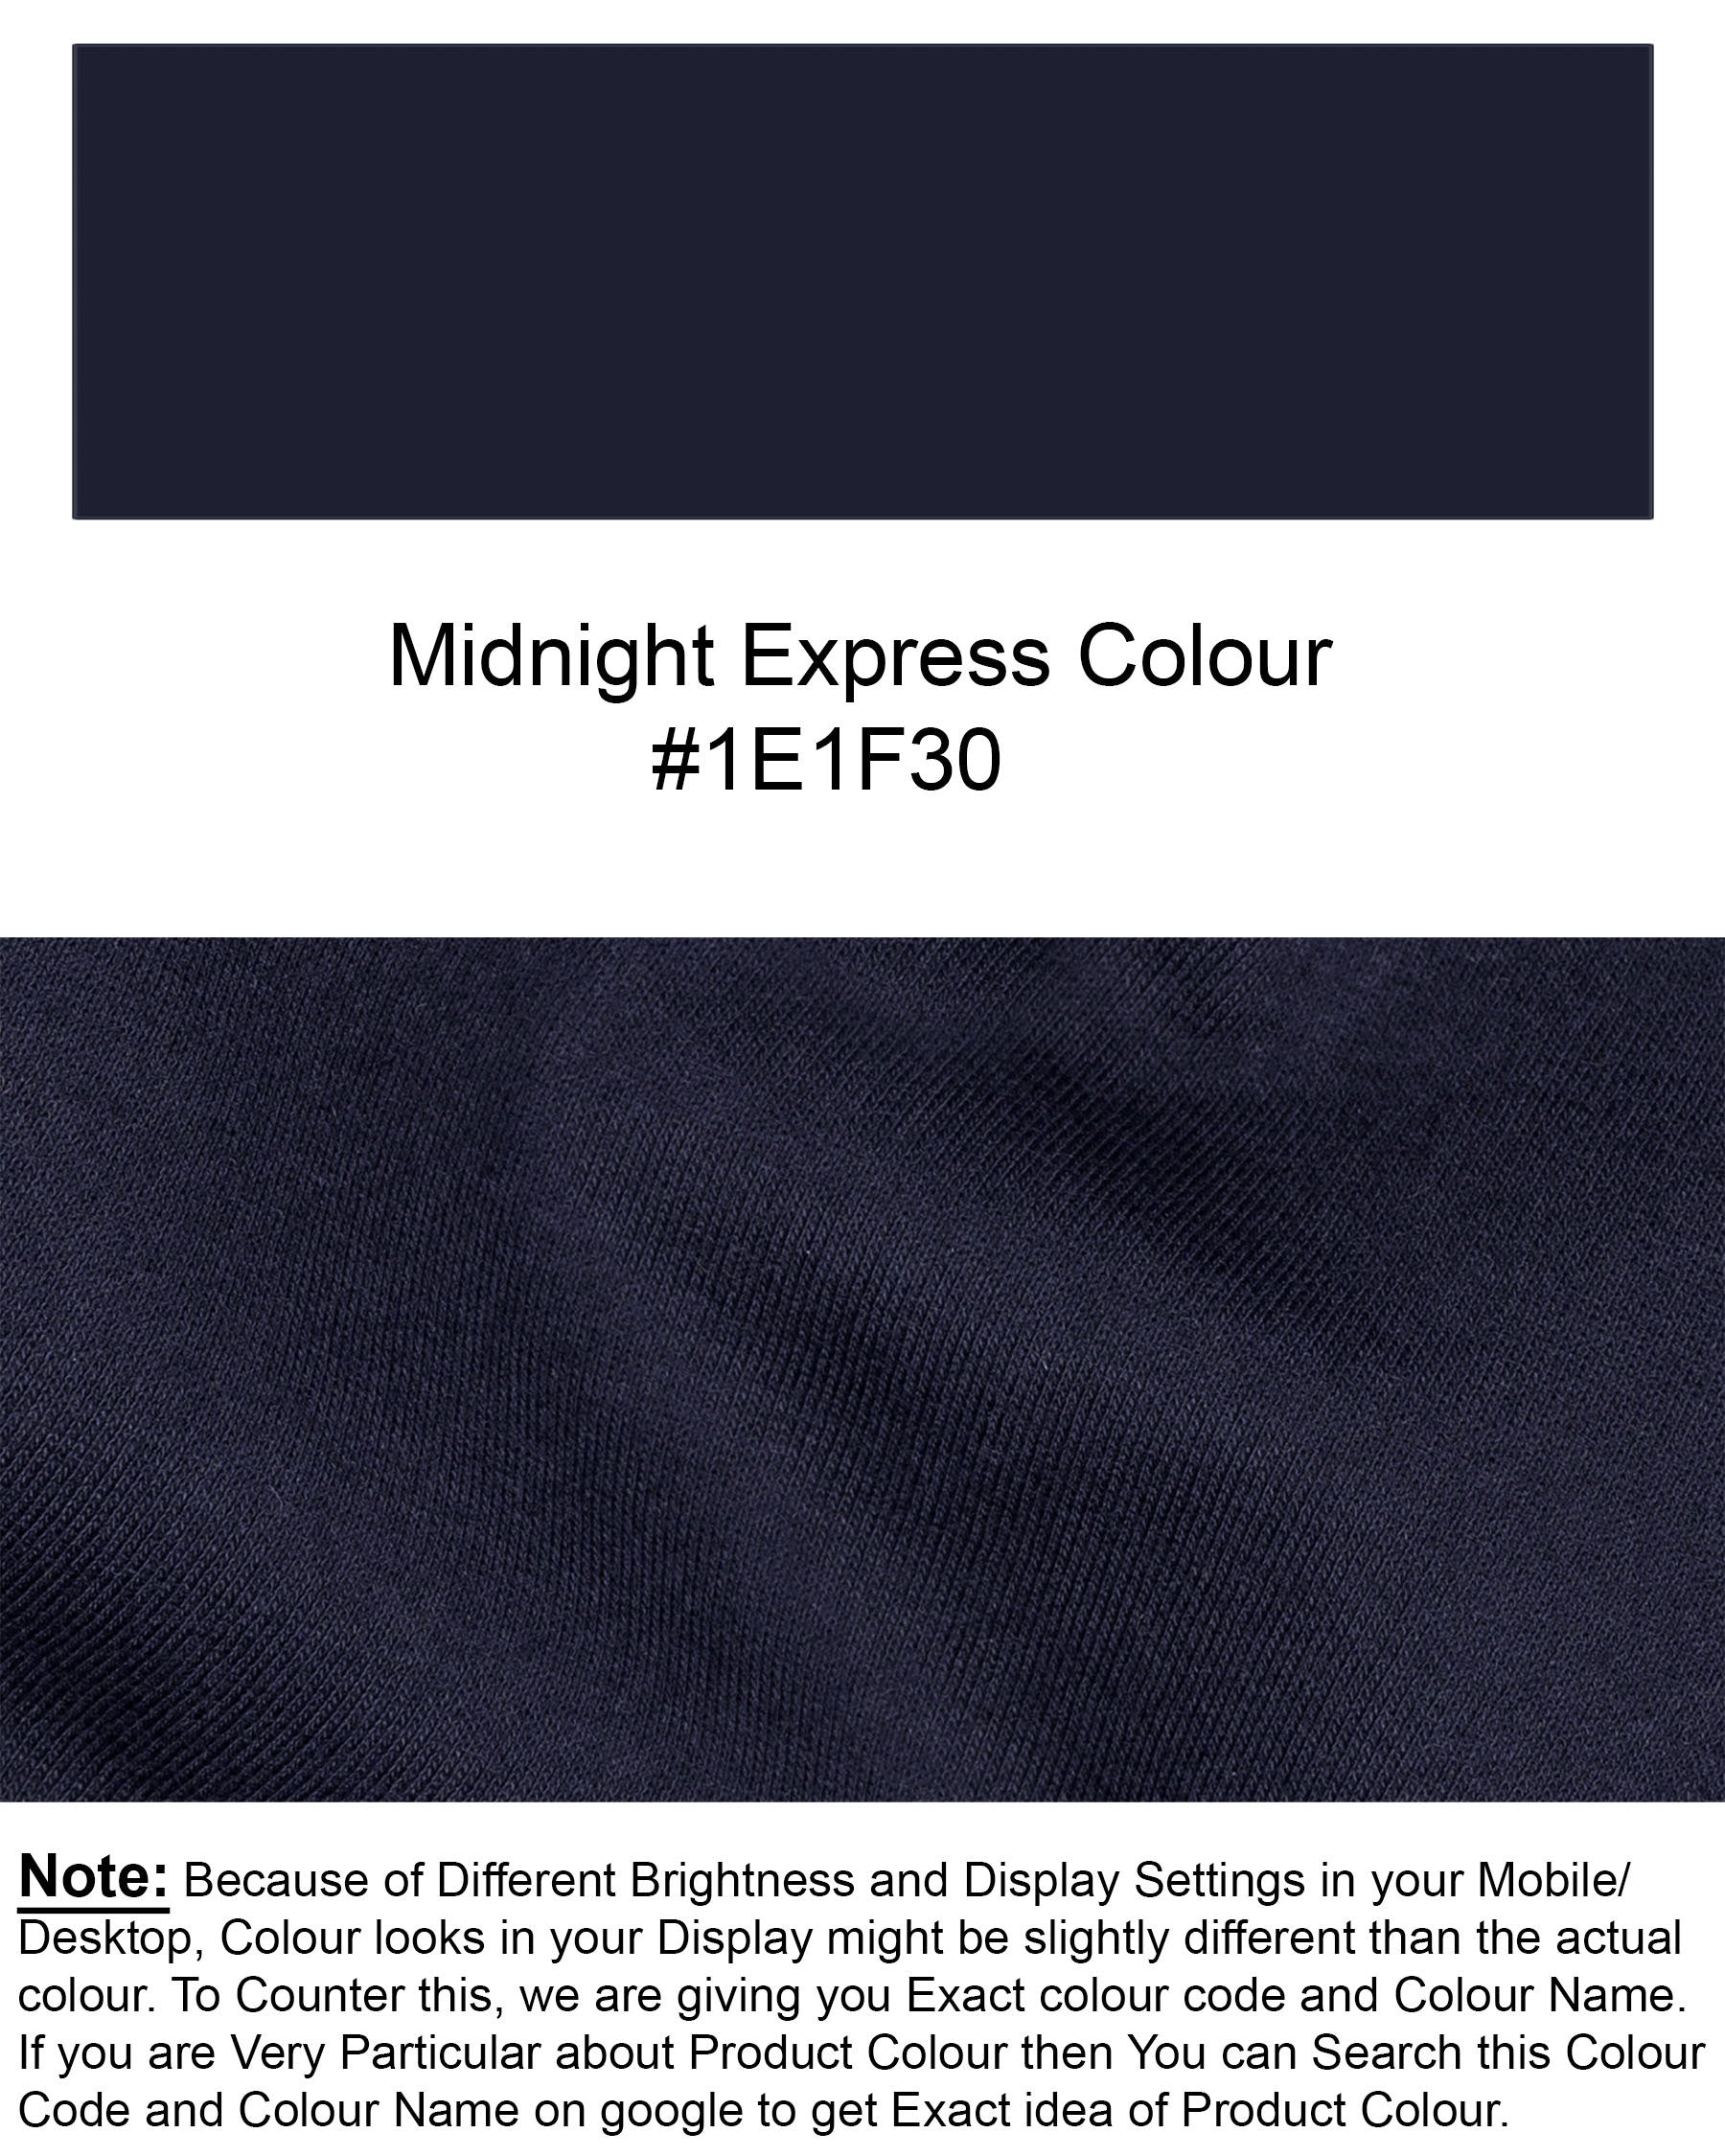 Midnight Express Full Sleeve Premium Cotton Jersey Sweatshirt TS473-S, TS473-M, TS473-L, TS473-XL, TS473-XXL